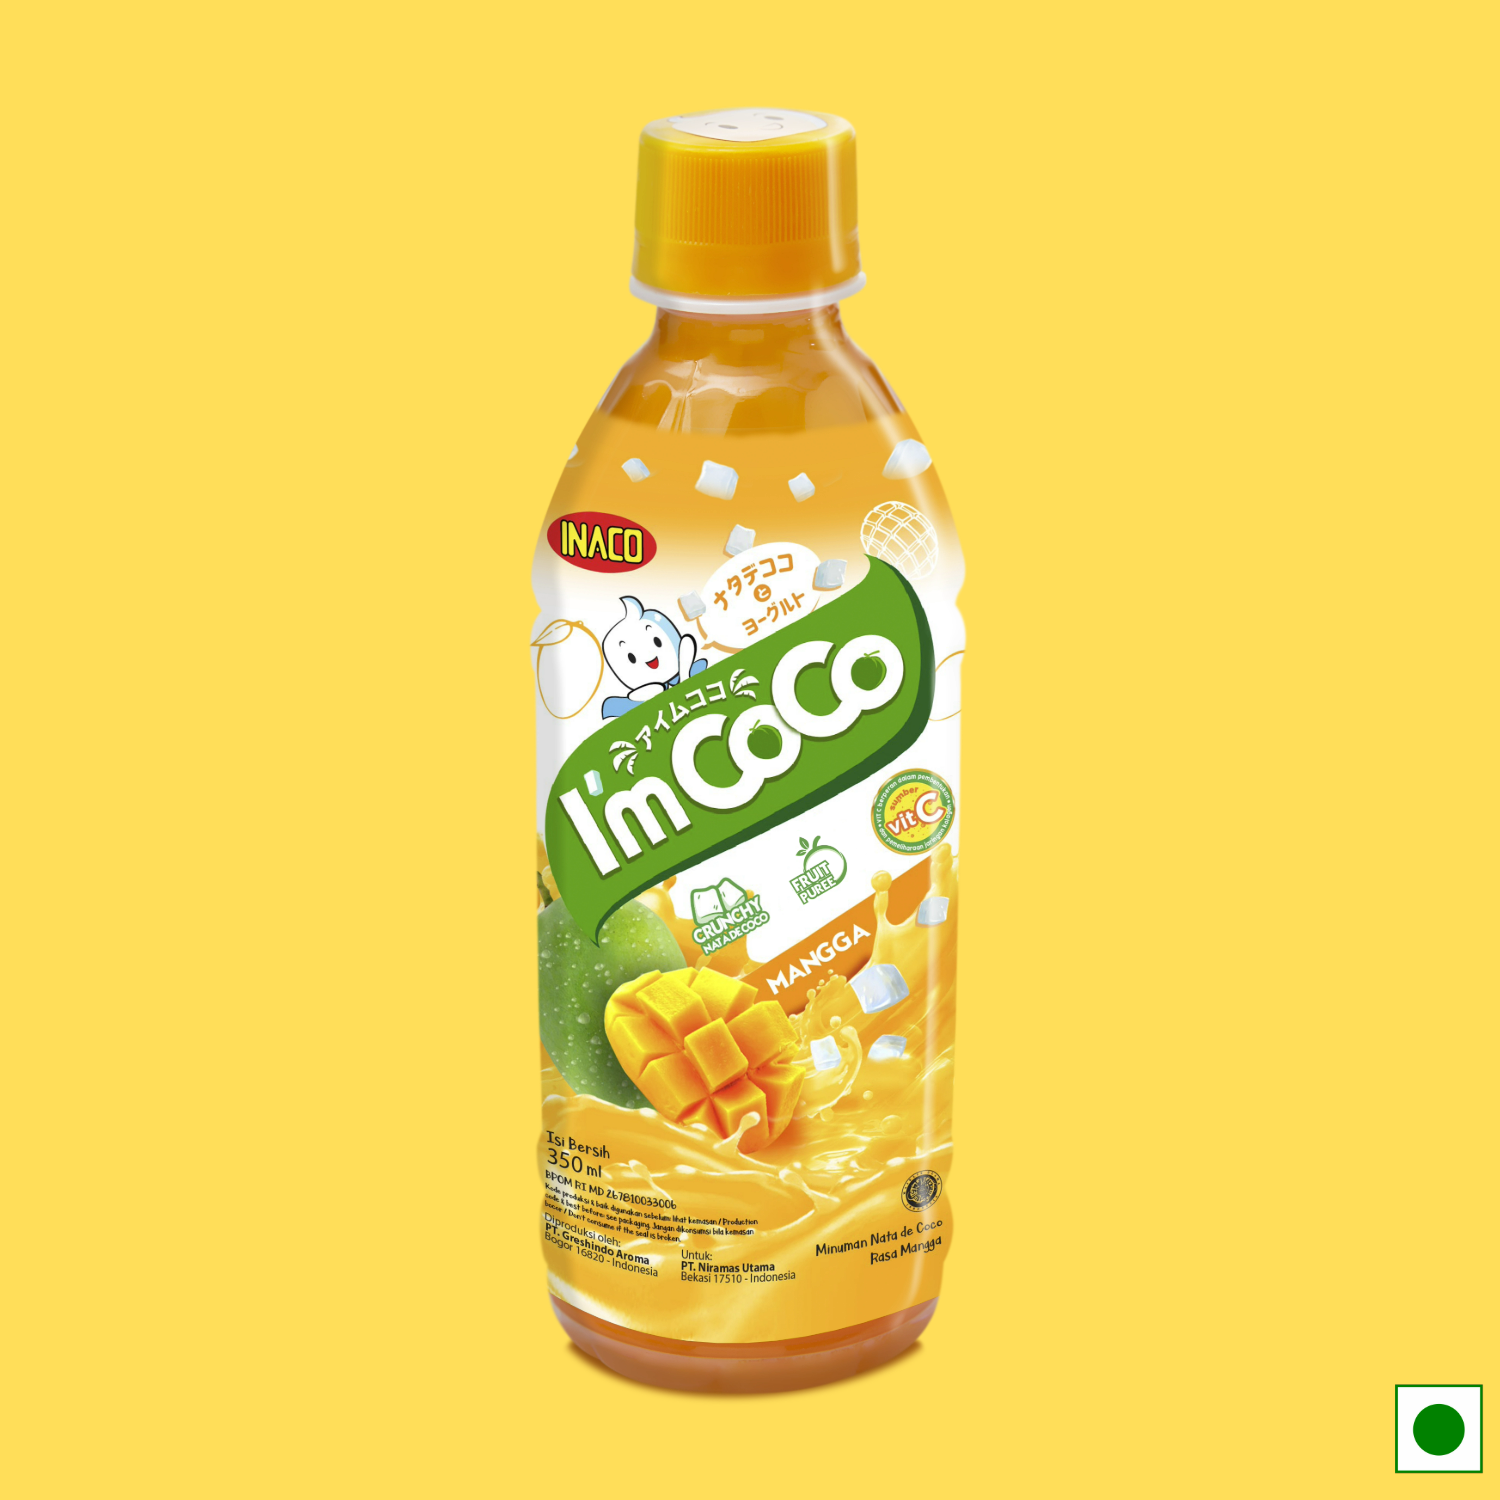 INACO I'm Coco Mango, 350ml (Imported)